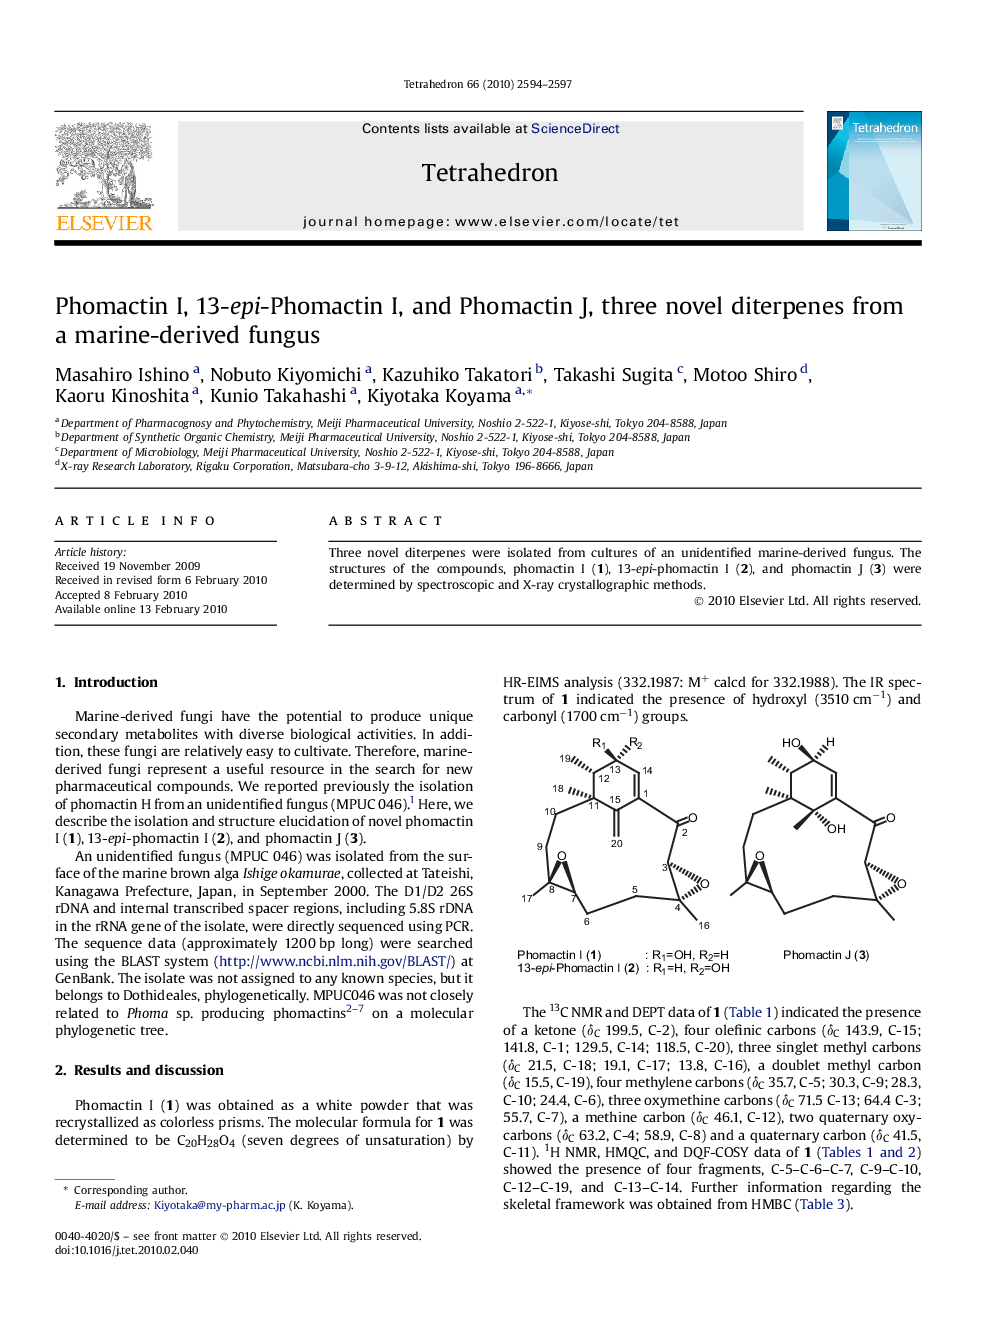 Phomactin I, 13-epi-Phomactin I, and Phomactin J, three novel diterpenes from a marine-derived fungus